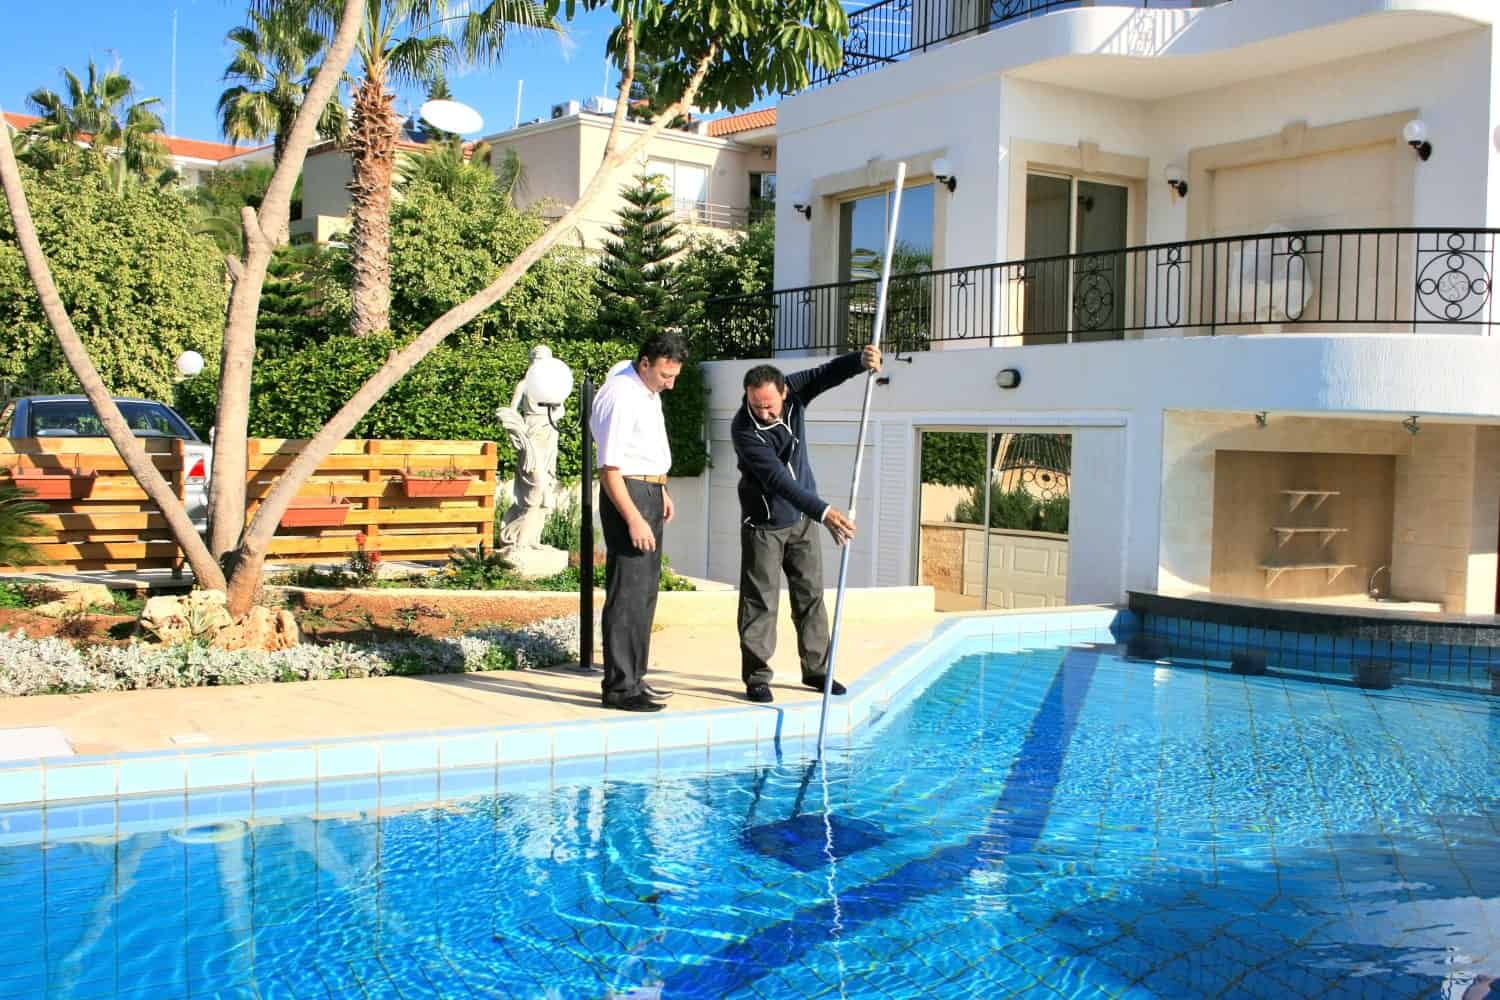 Dos hombres al lado de la piscina mirando el agua mientras uno de ellos la limpia con un limpiafondos.